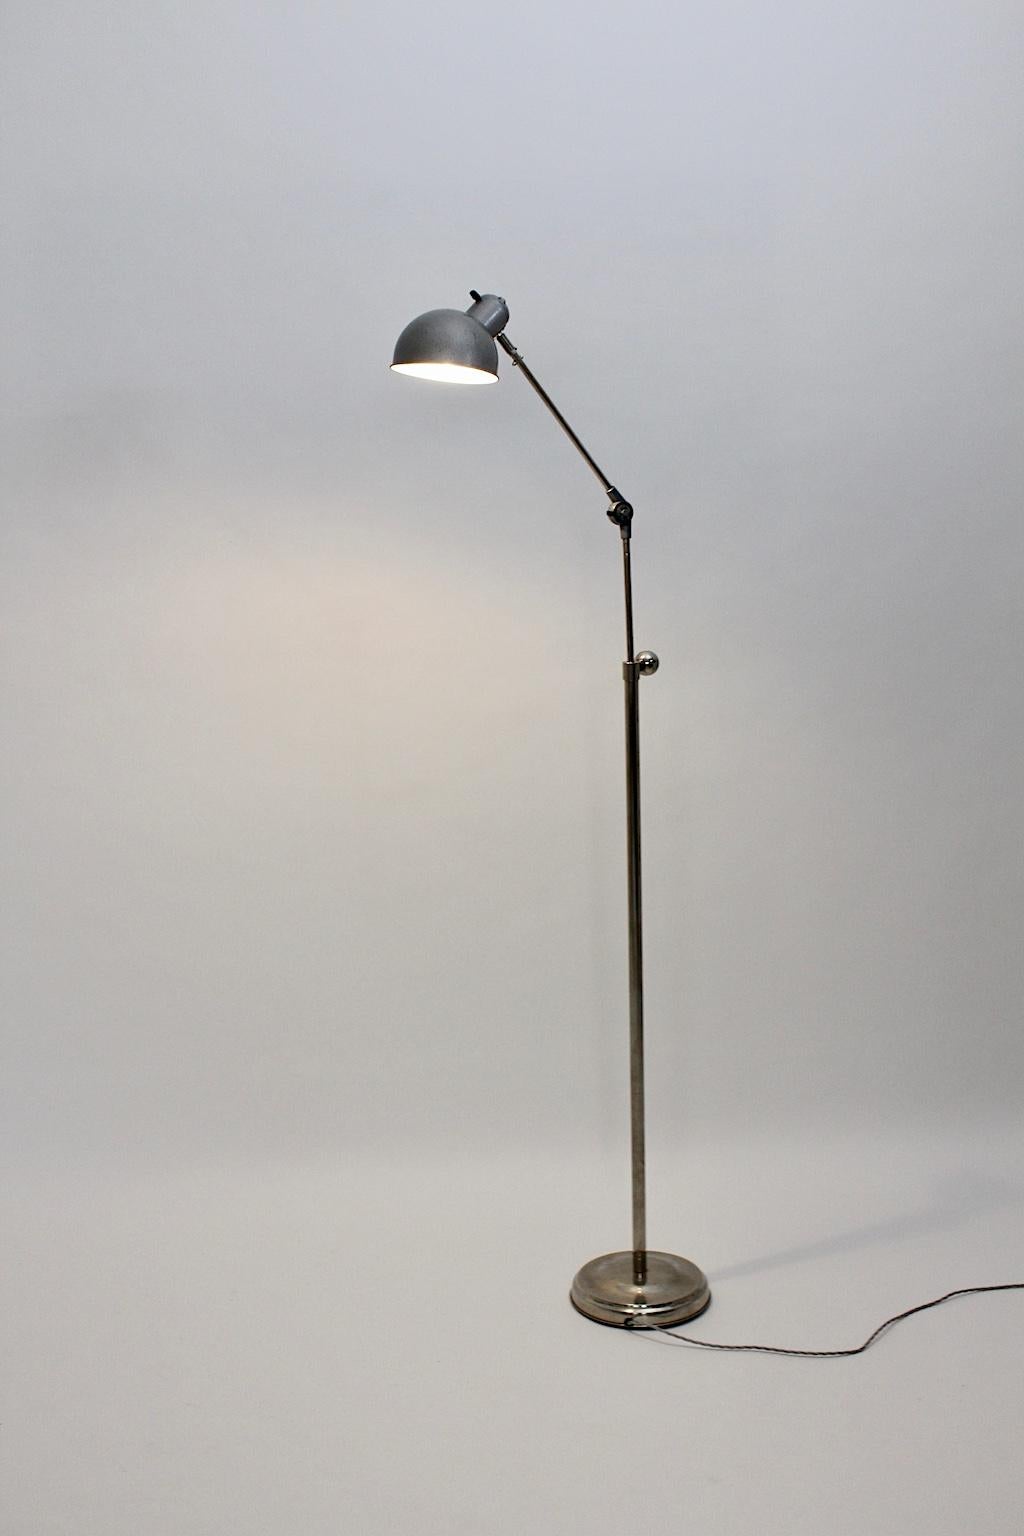 Bauhaus Art Deco Vintage Industrial Silver Nickel Metal Floor Lamp, 1930s For Sale 1